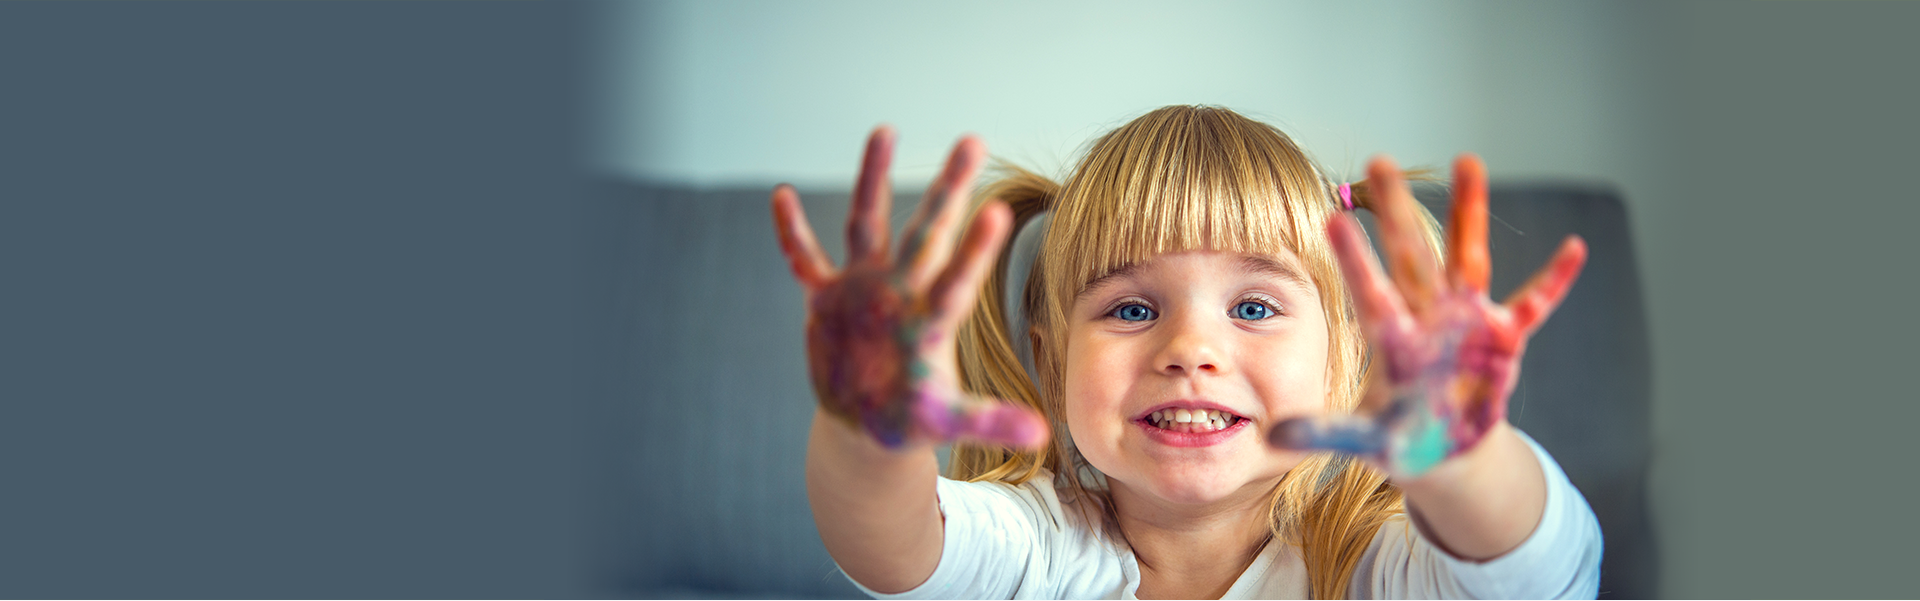 Bambina con mani colorate - slide5